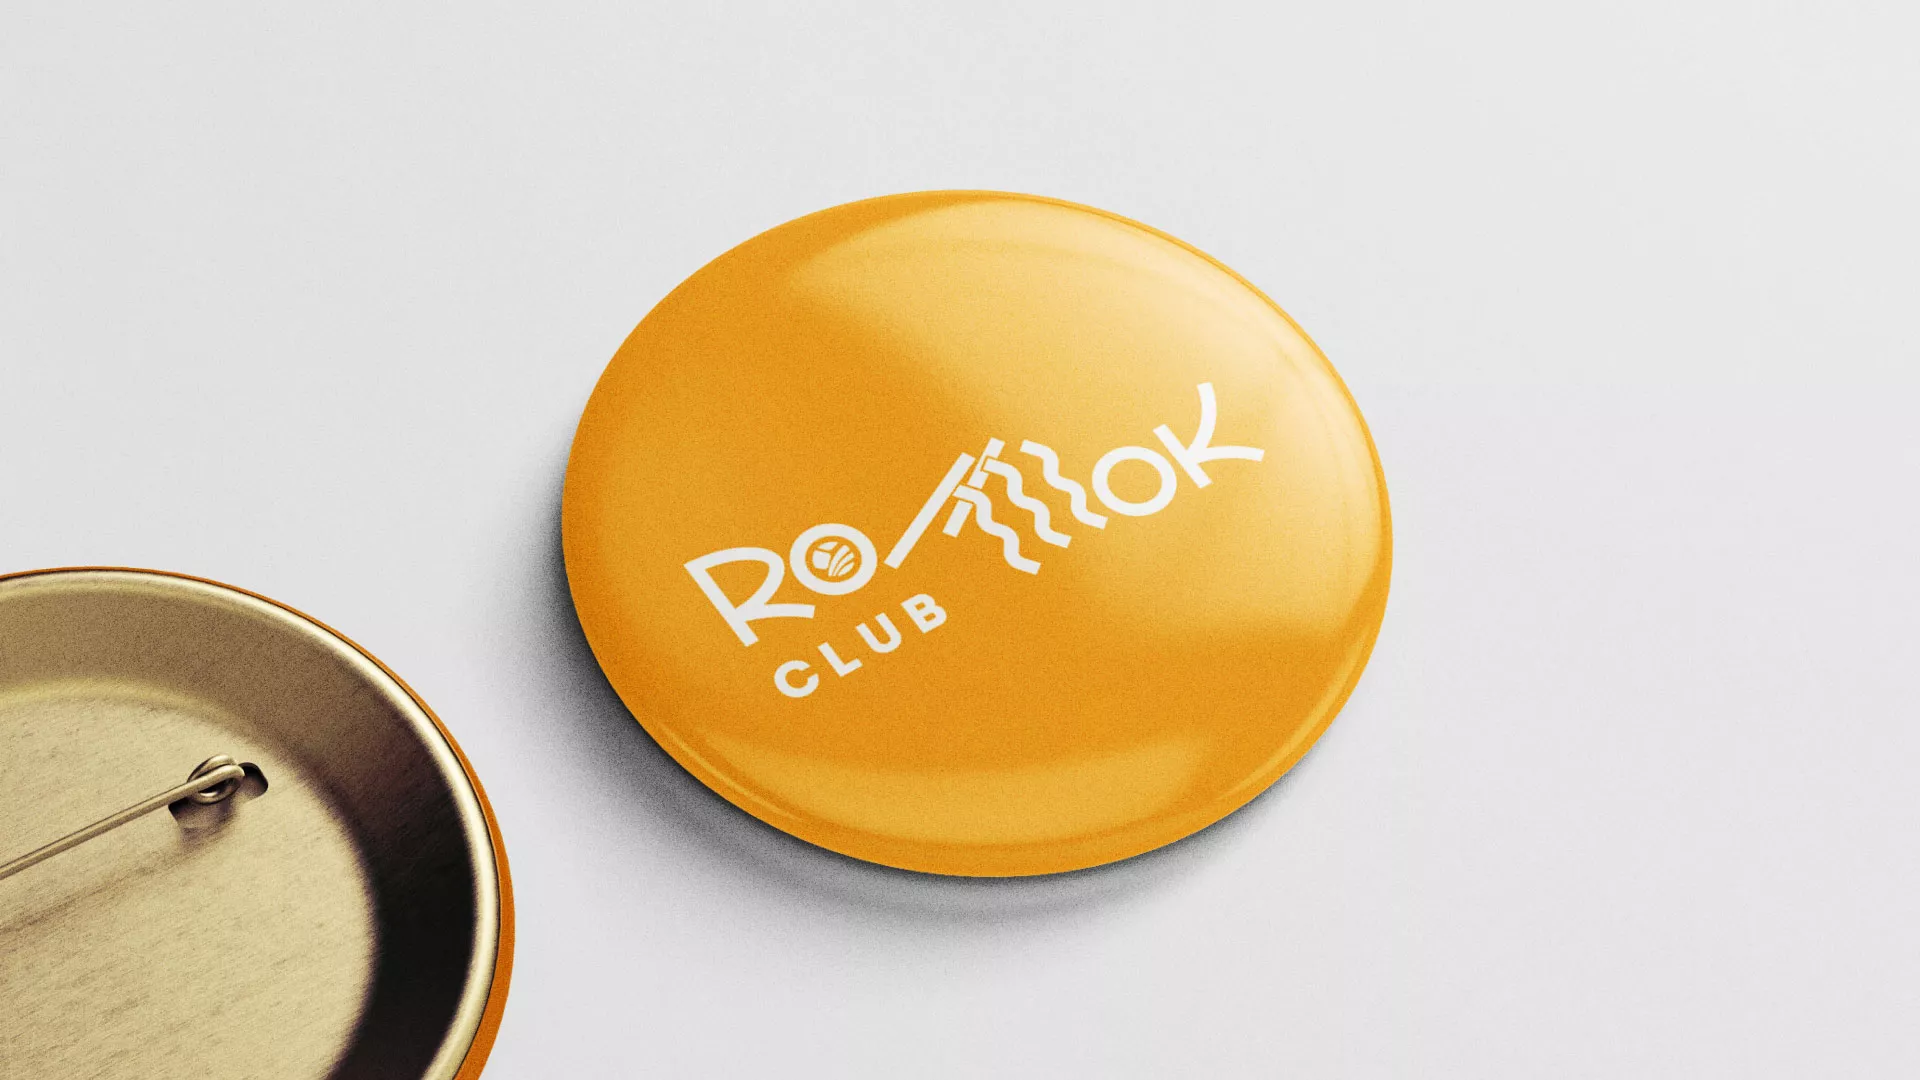 Создание логотипа суши-бара «Roll Wok Club» в Миньяре